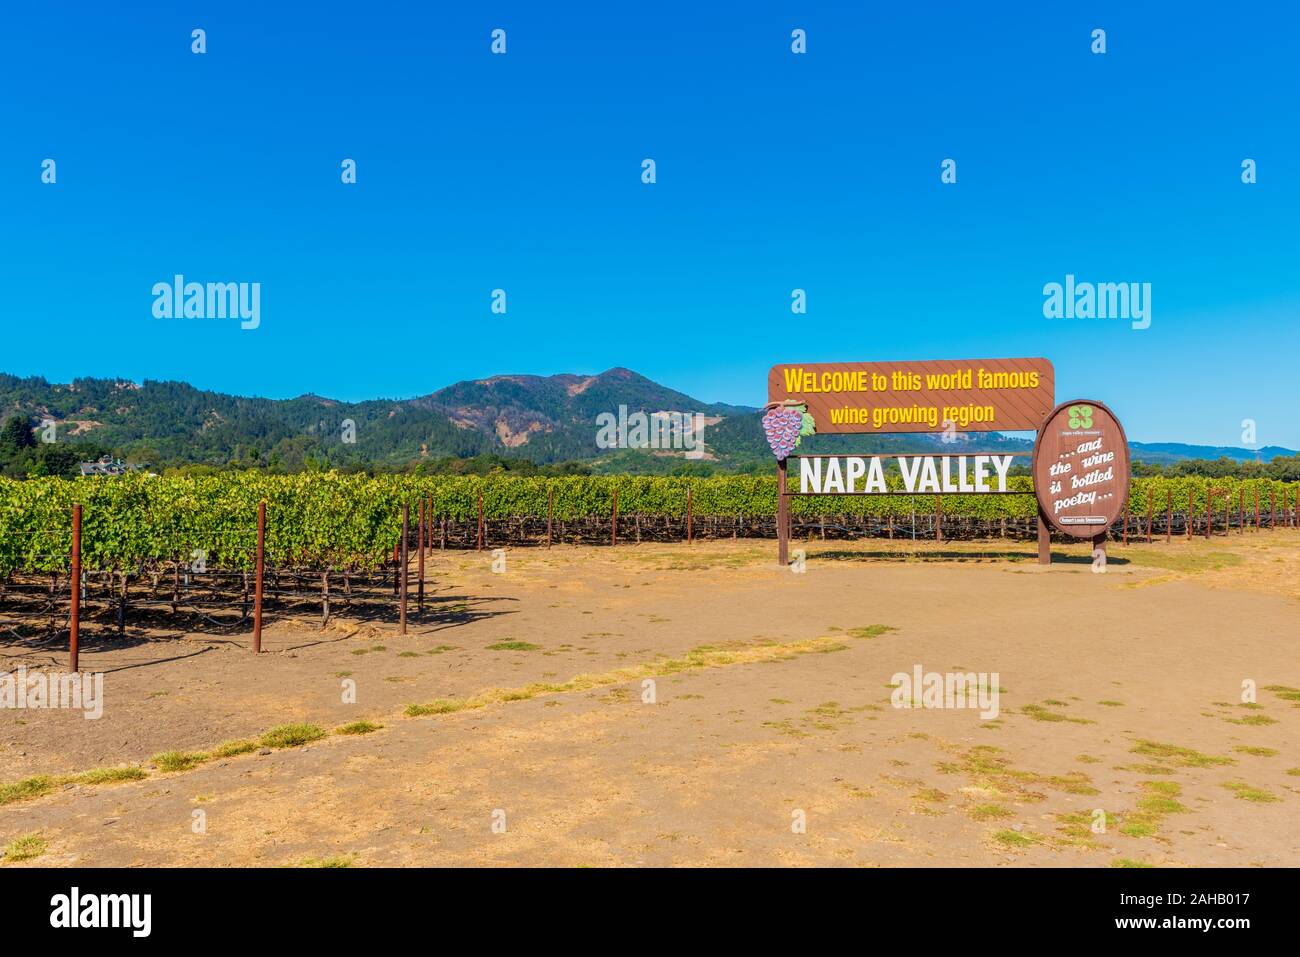 Nach Napa Valley Zeichen in Napa, Kalifornien, USA Willkommen. Napa County ist berühmt für seine regionalen Wein Industrie bekannt. Stockfoto